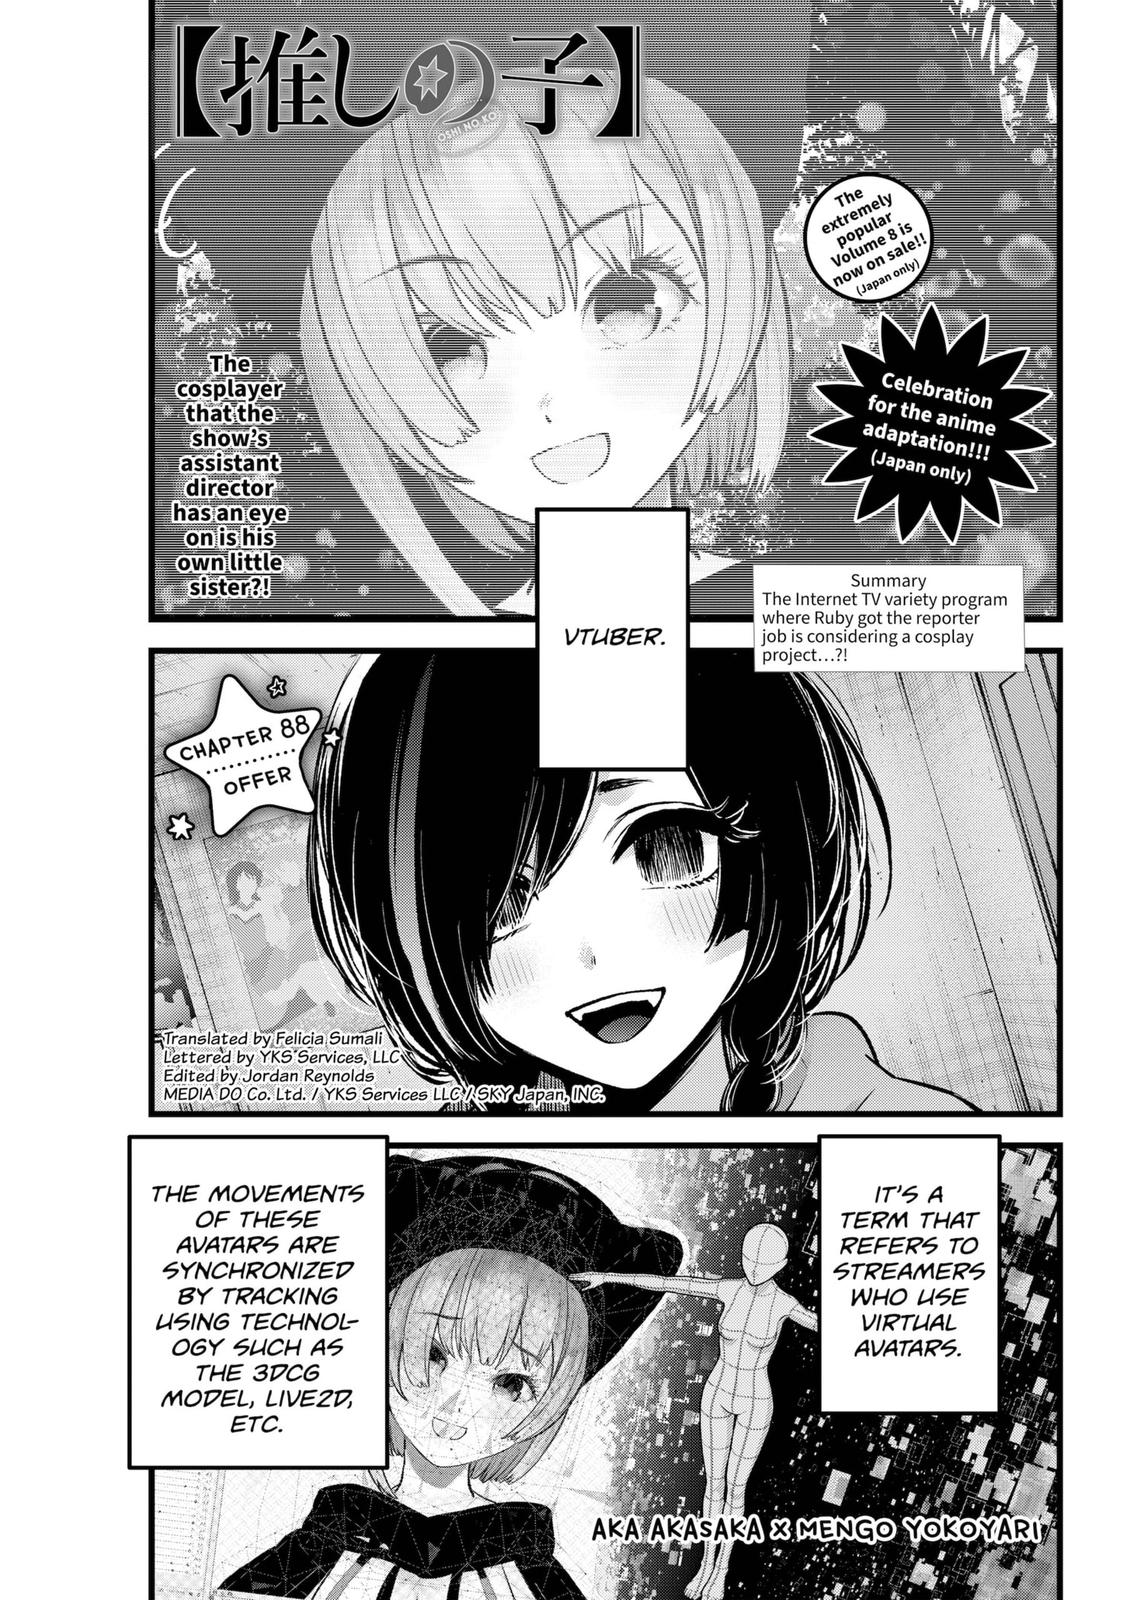 Oshi no ko, Chapter interlude-2 - Oshi no ko Manga Online